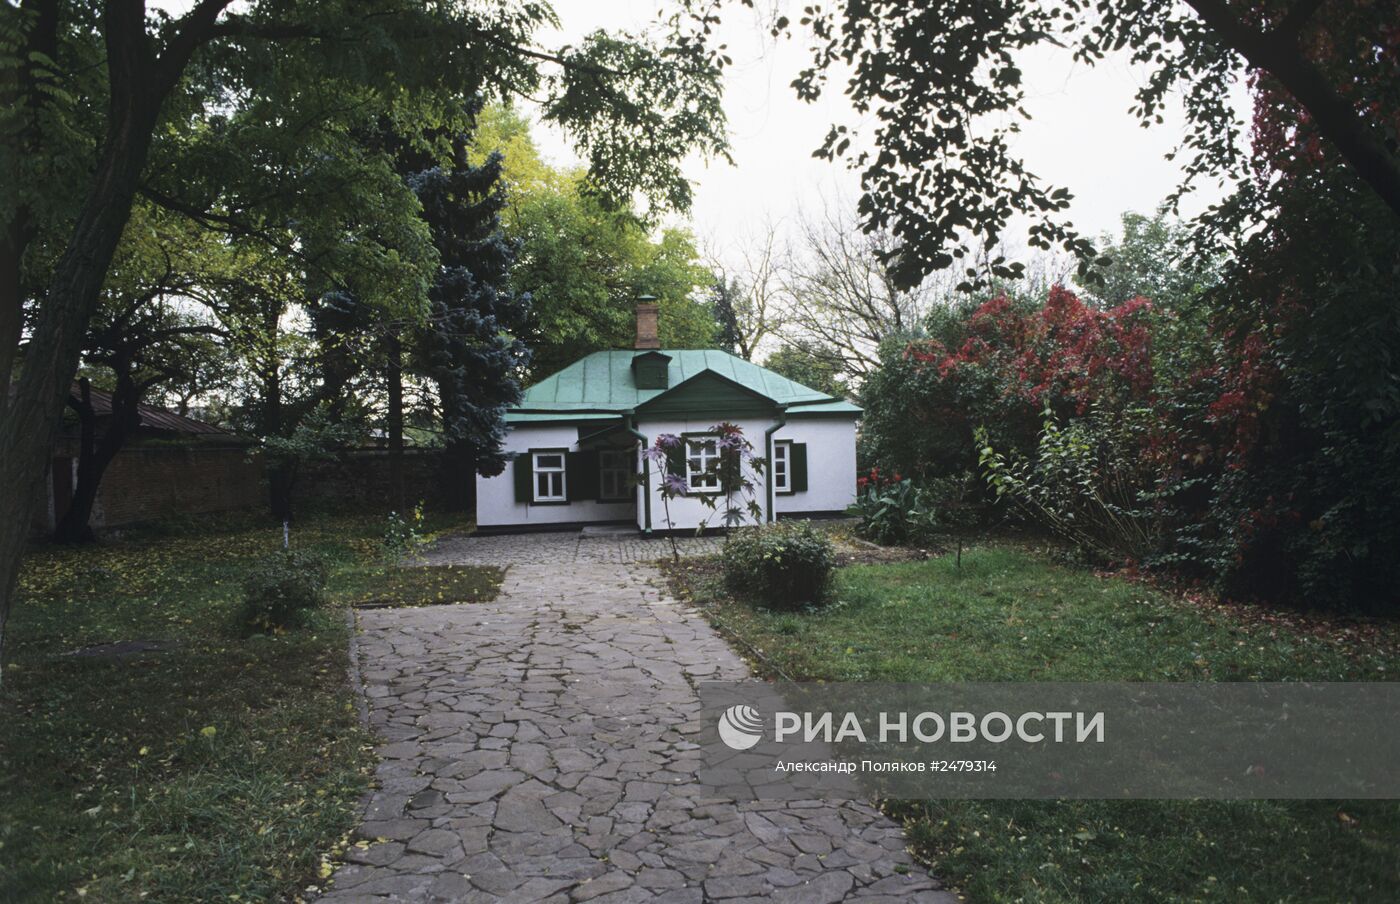 Музей "Домик Чеховых" в Таганроге